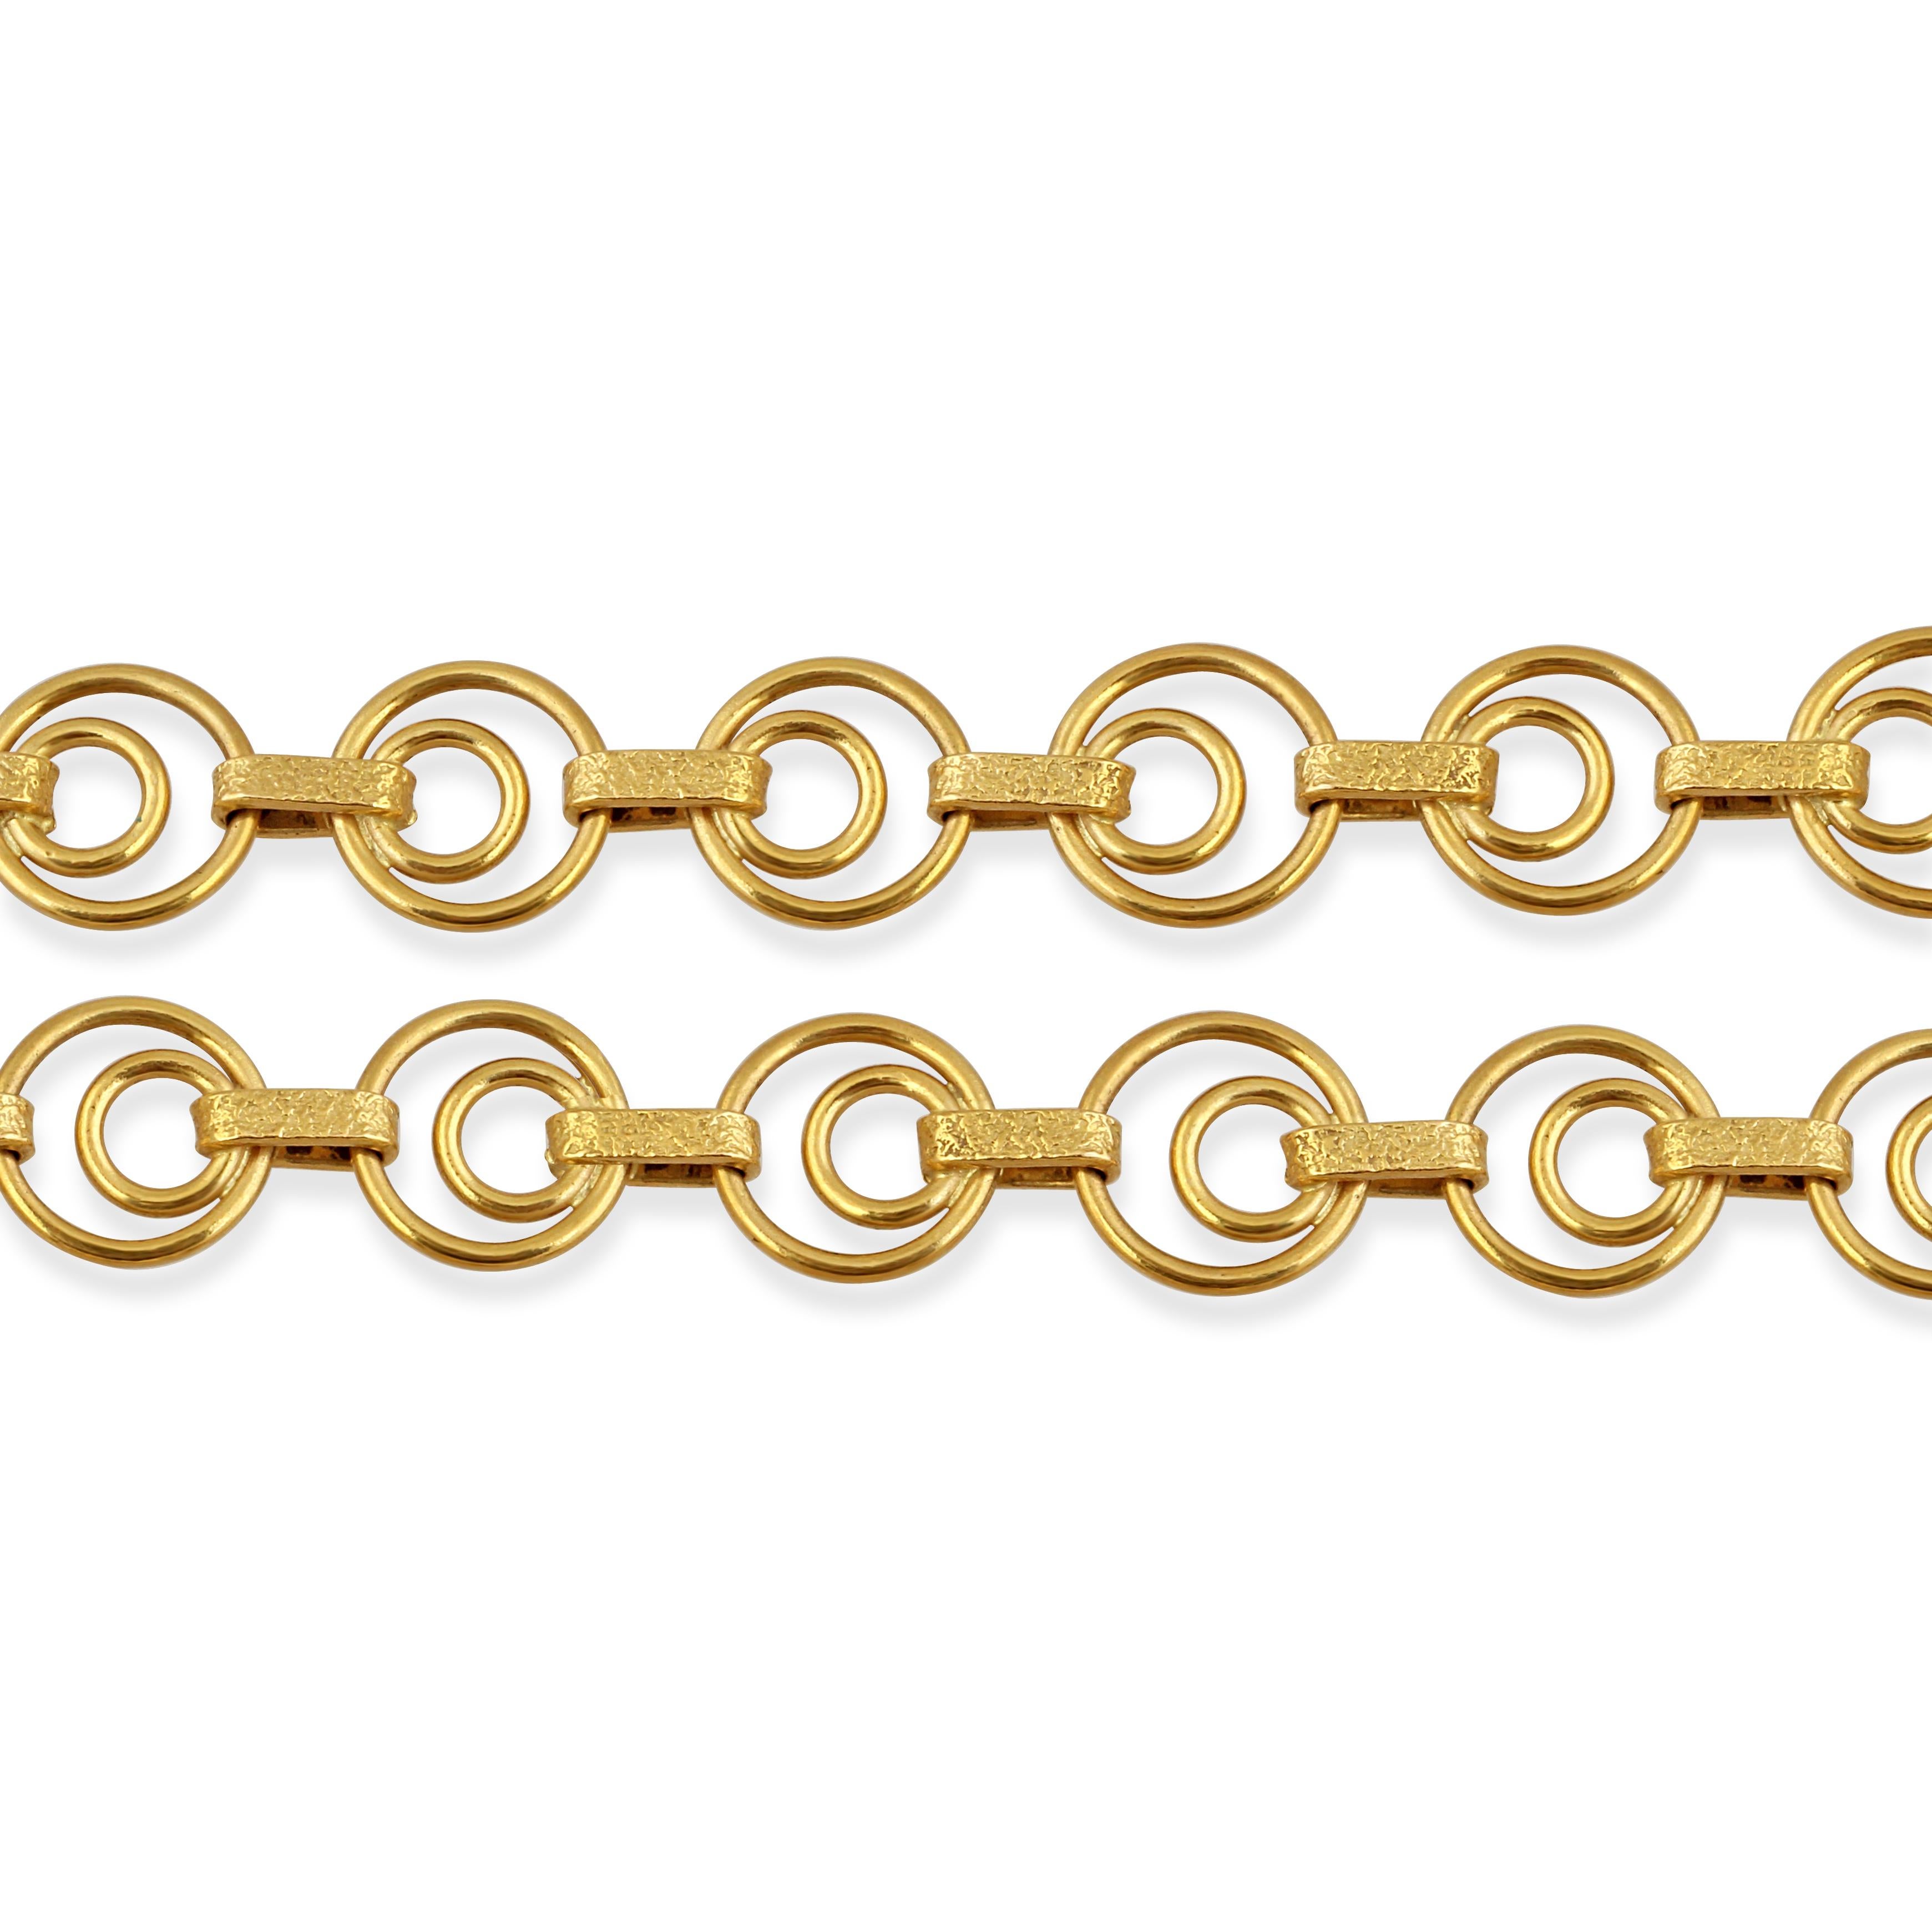 Eine Halskette aus 18 Karat Gelbgold mit doppelten Ringgliedern und strukturierten Goldabstandshaltern.

Länge: 80cm
Gewicht: 34.20gr
